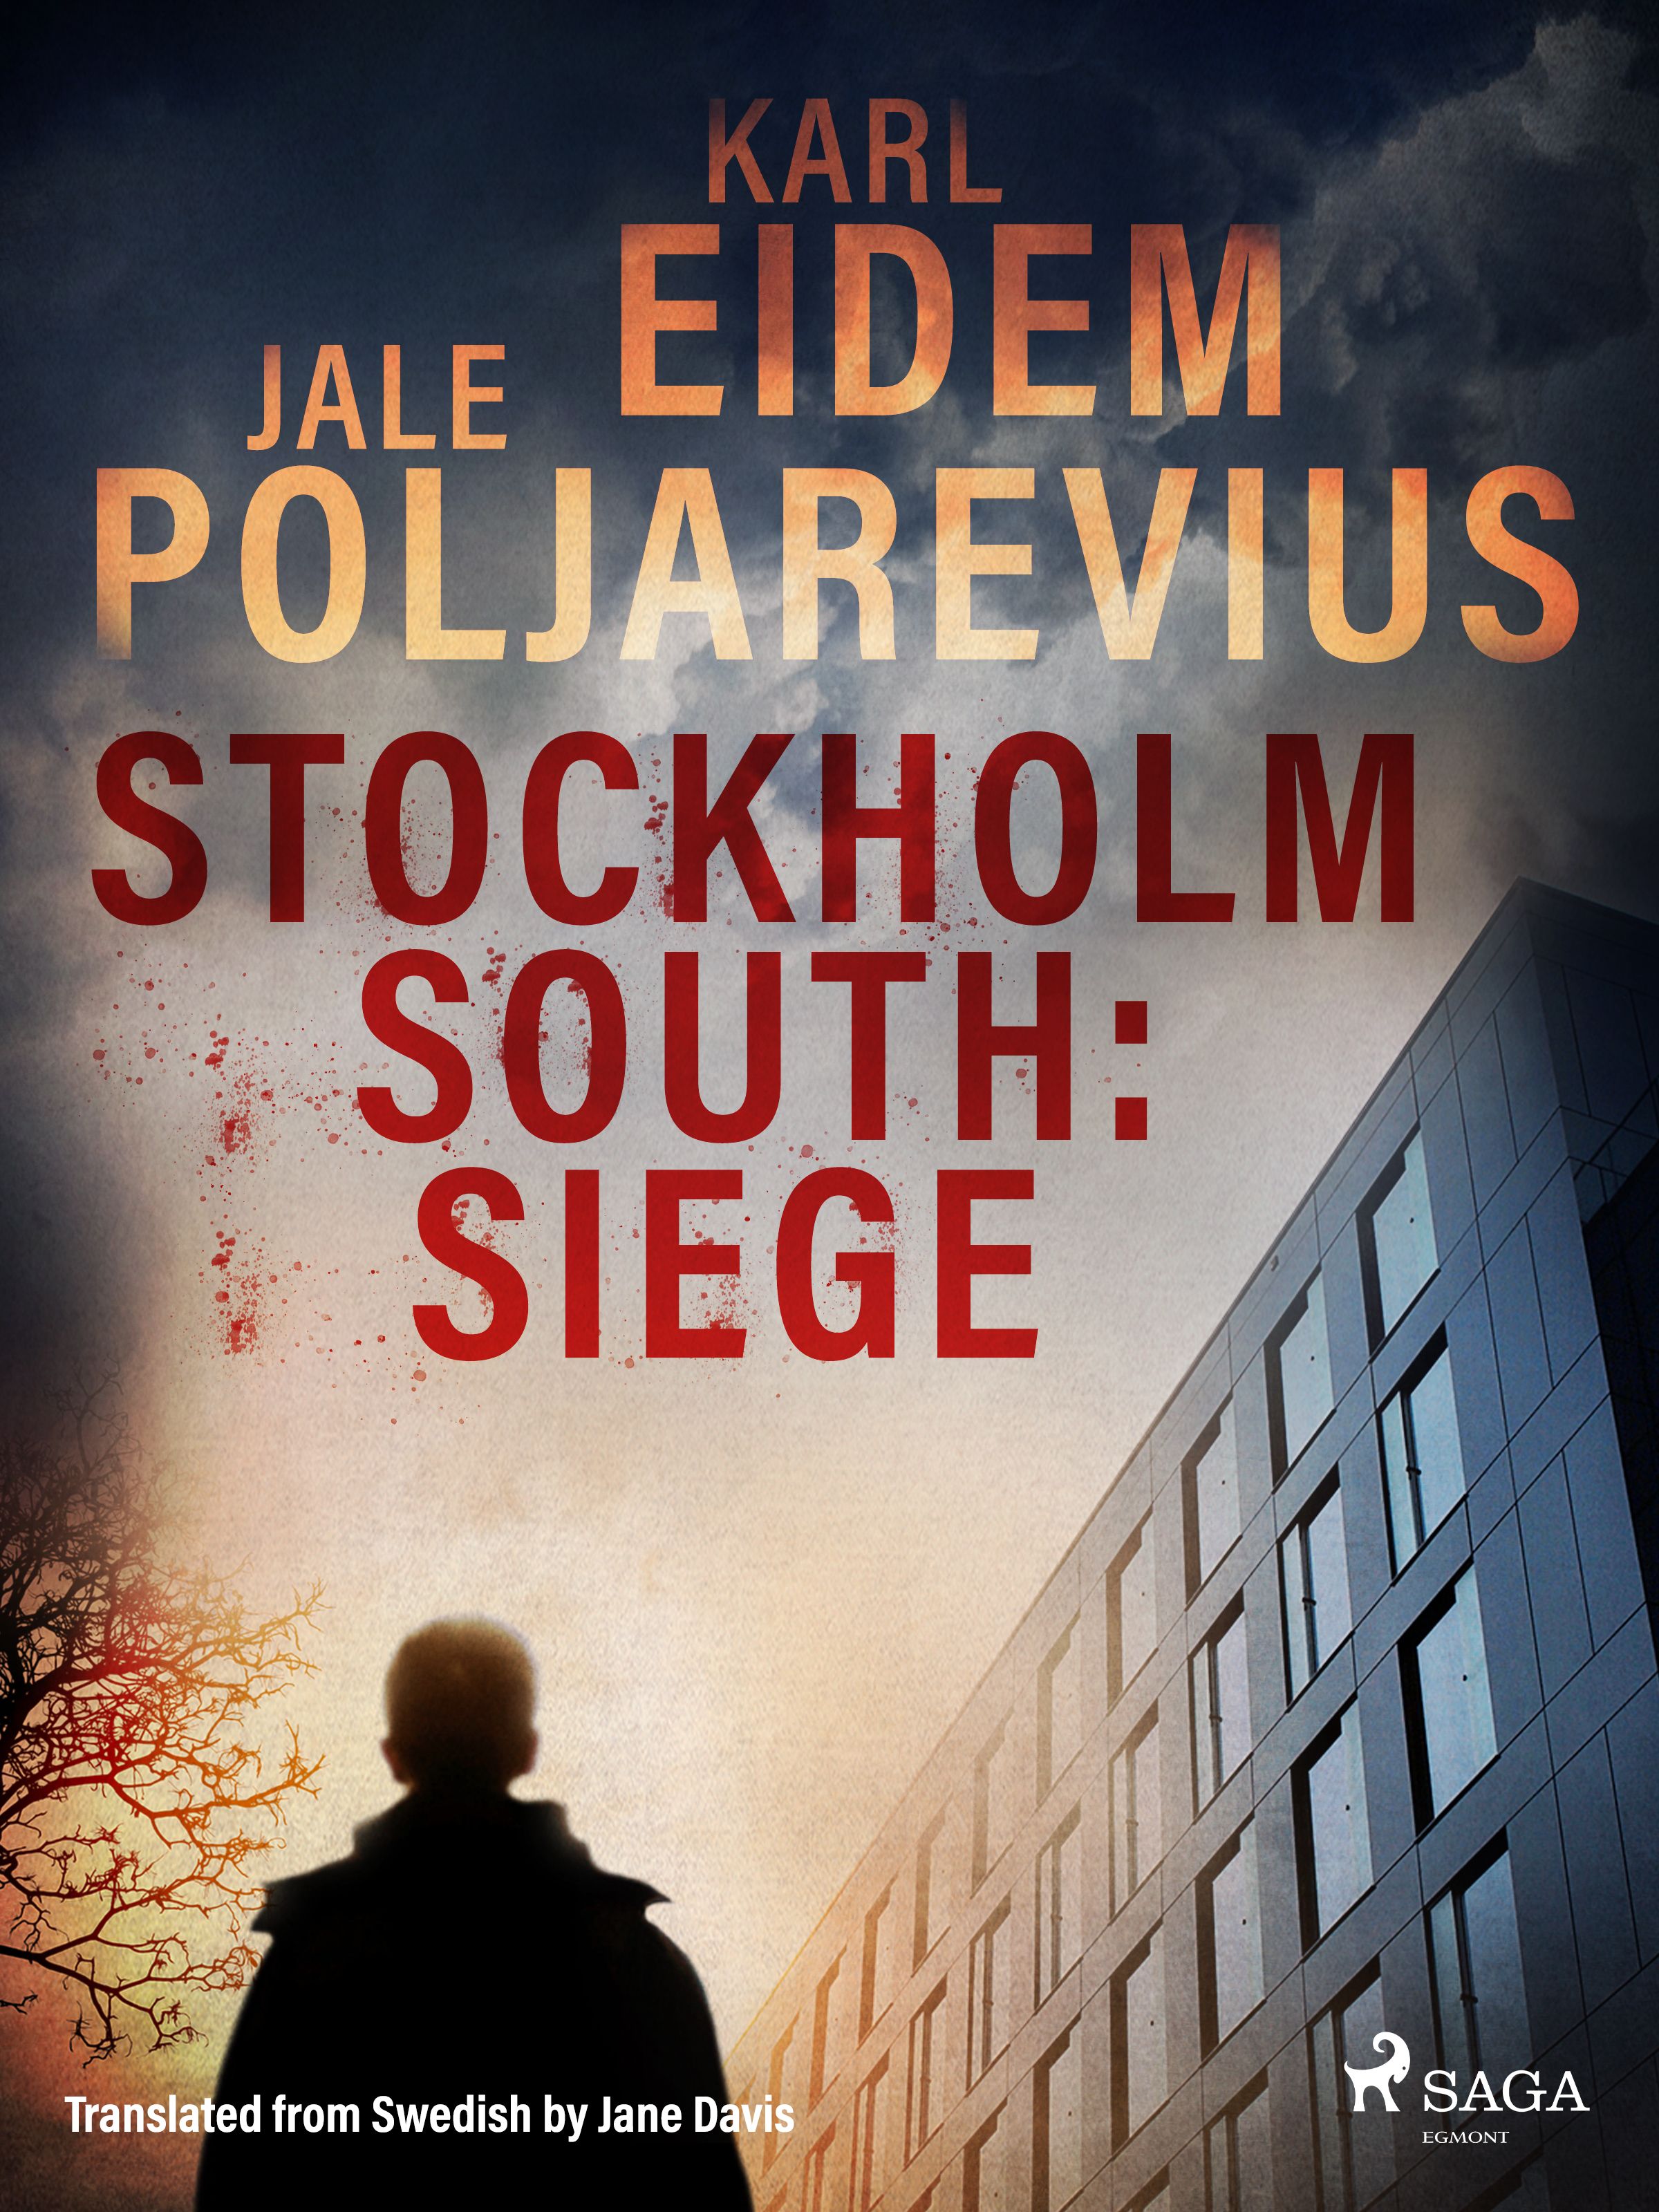 Stockholm South: Siege, e-bok av Karl Eidem, Jale Poljarevius